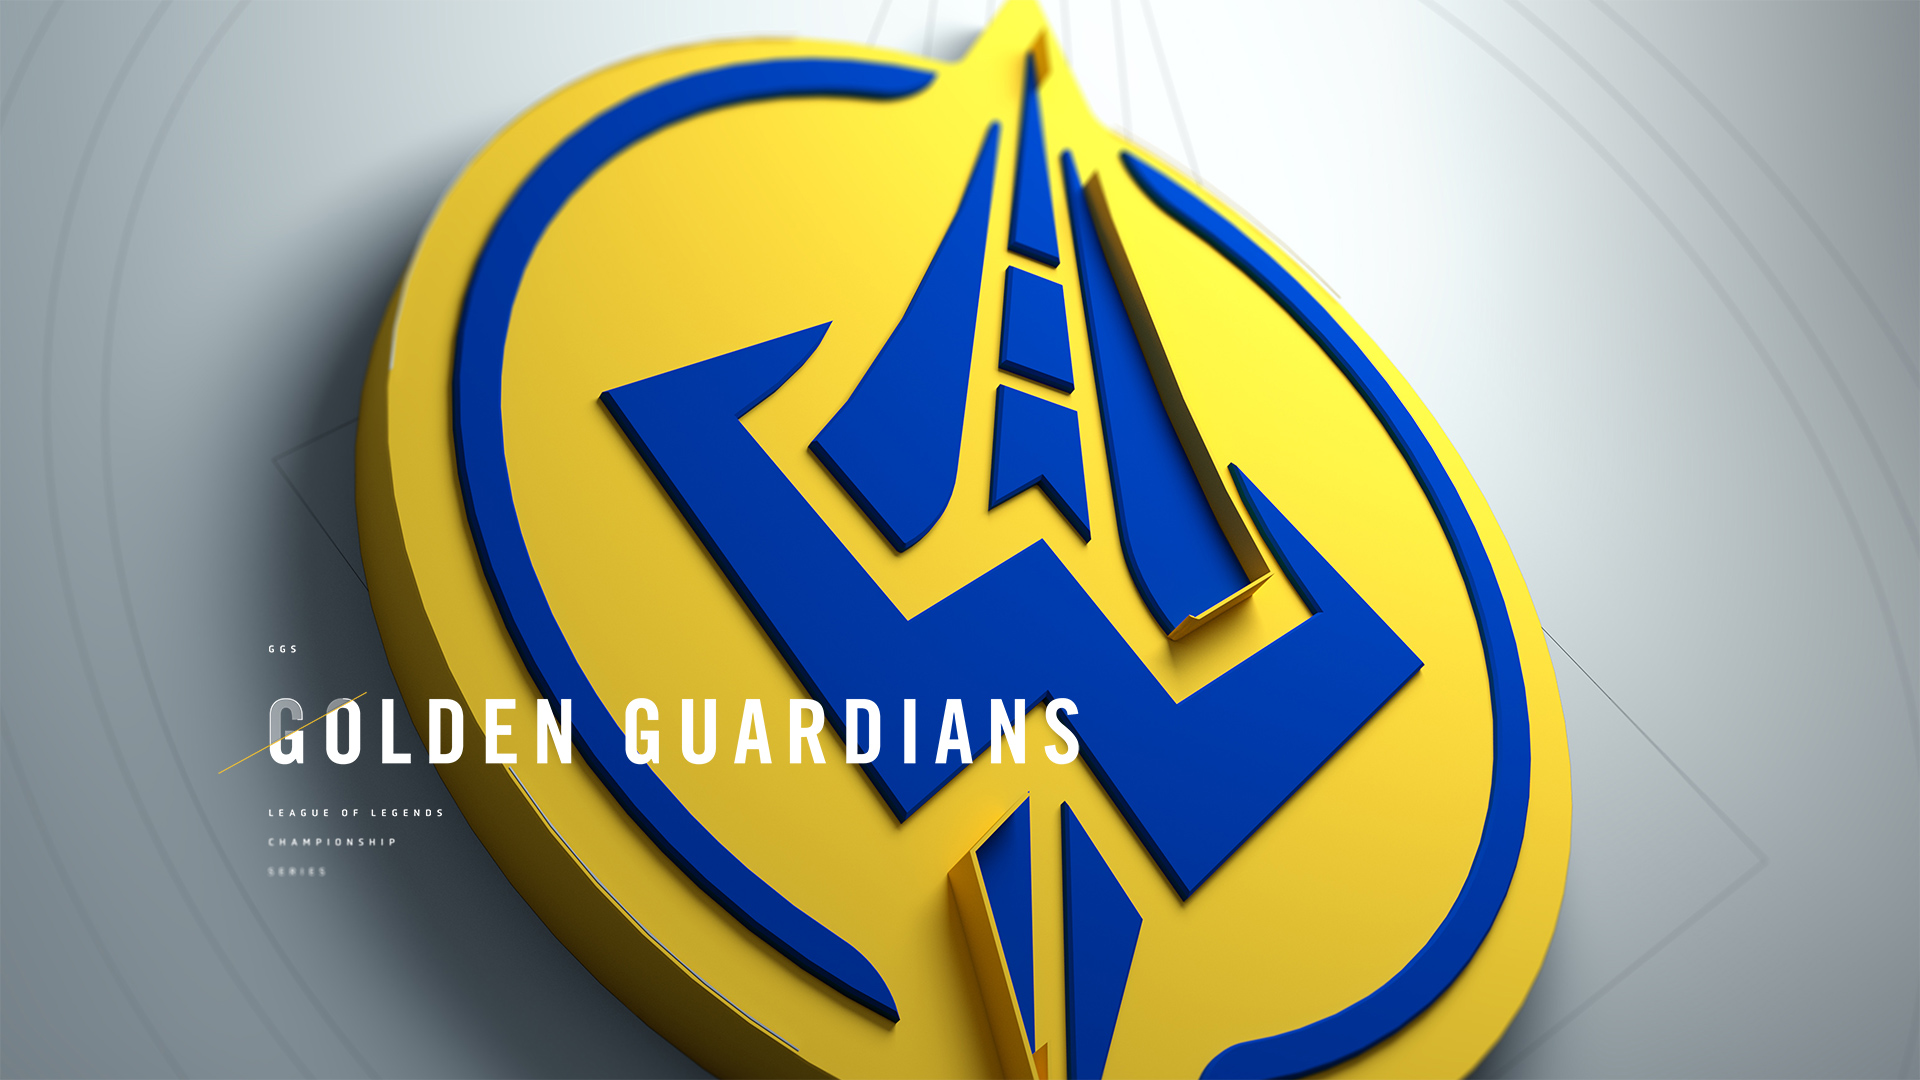 League of Legends LCS: Golden Guardians 2020 Preview